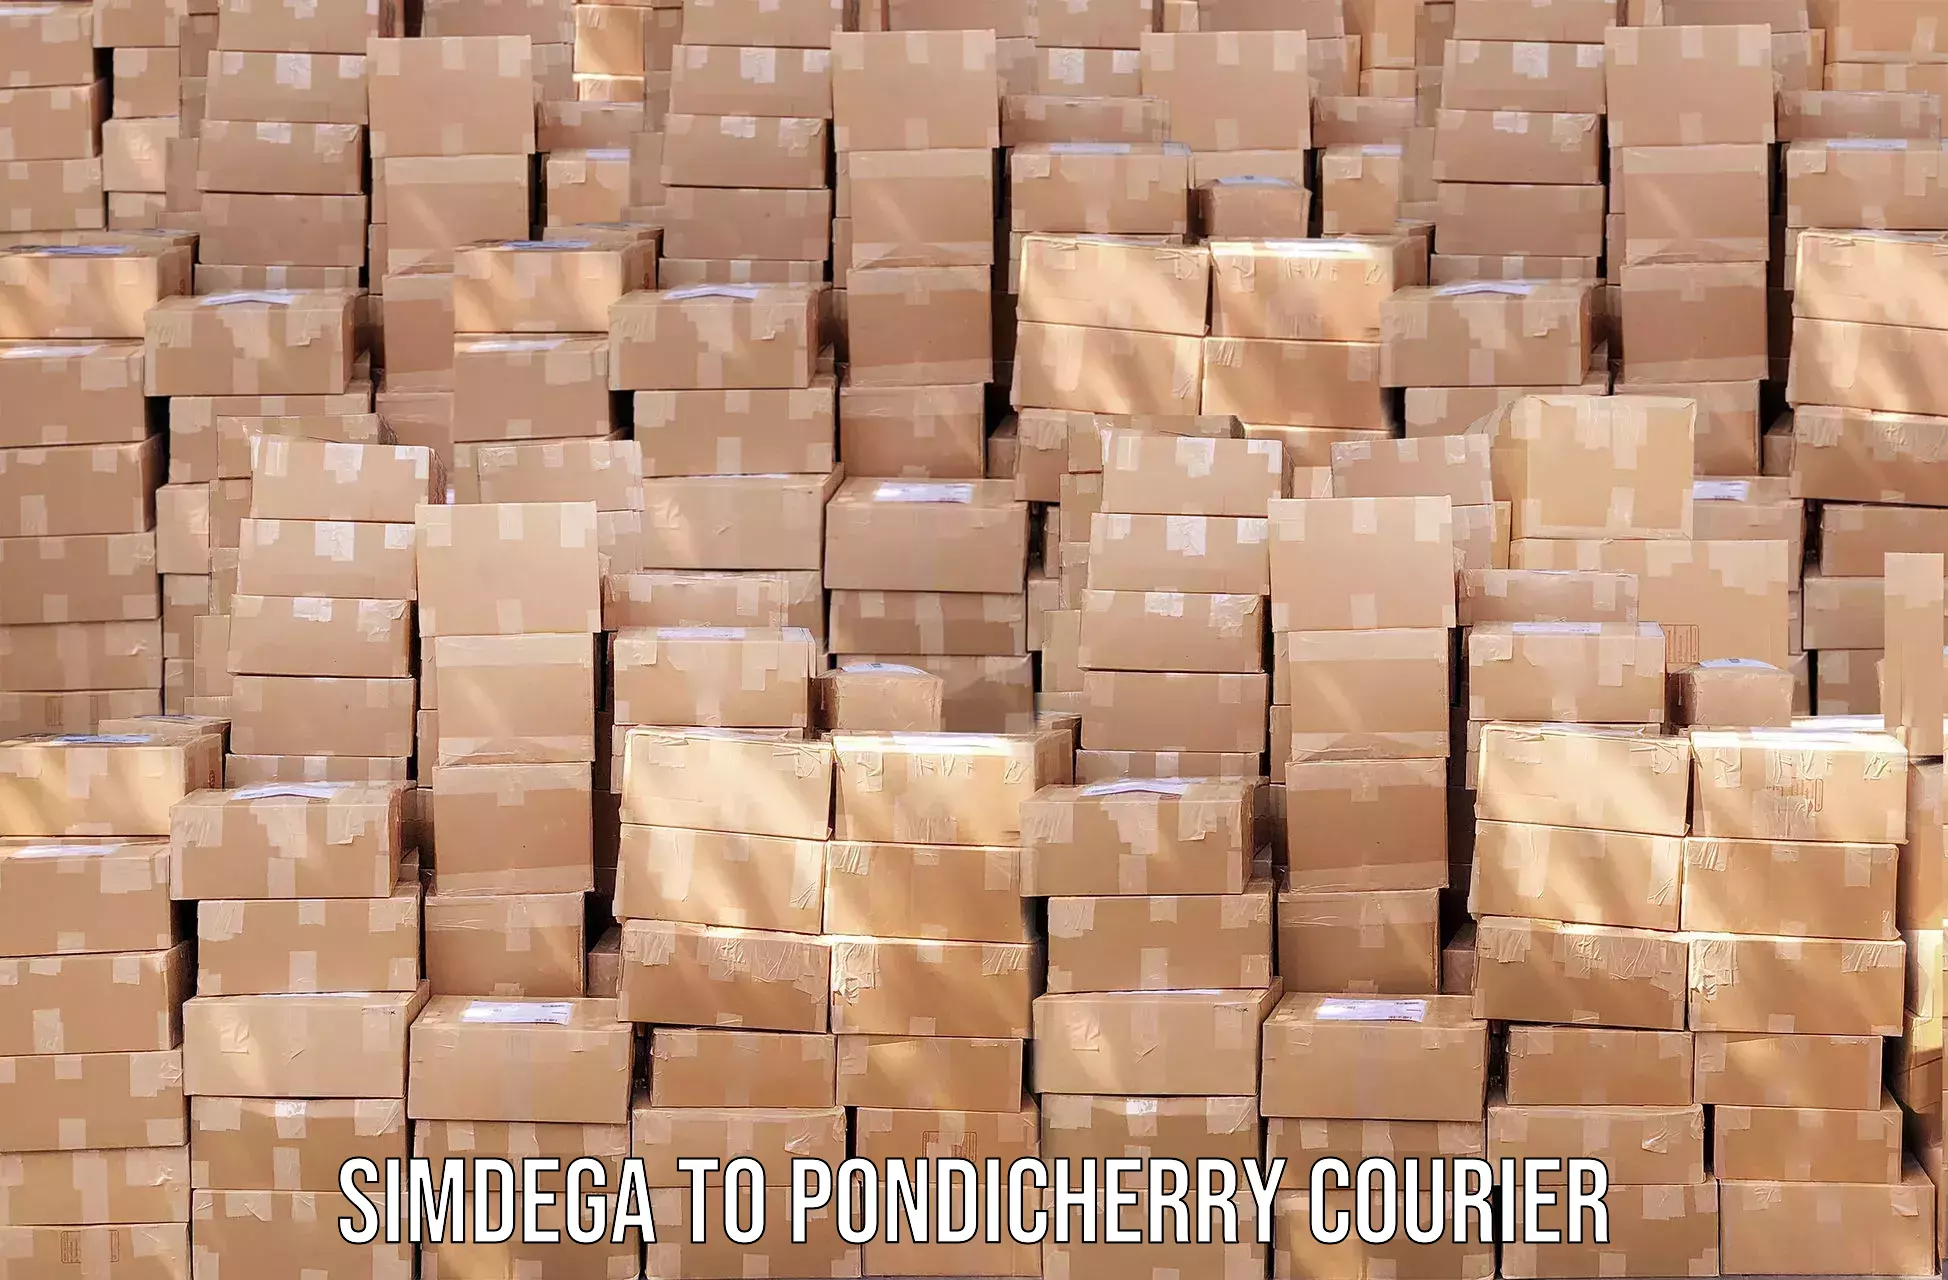 Supply chain efficiency Simdega to Pondicherry